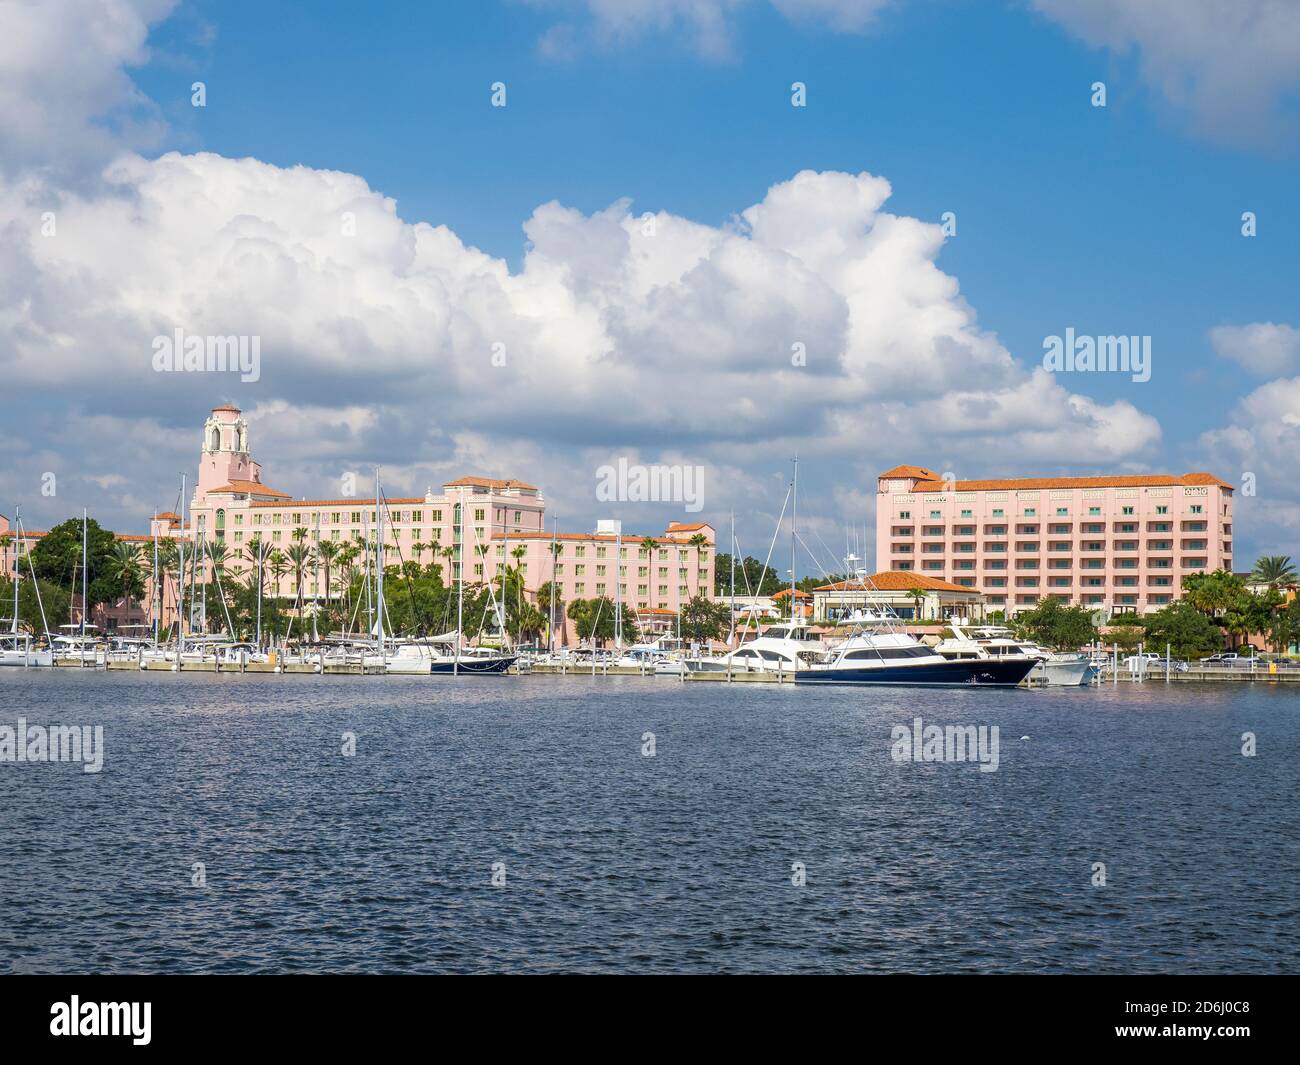 El hotel Vinoy, el puerto deportivo y los apartamentos a través de la cuenca del yate del norte en el centro de St Petersburg Florida frente al mar Foto de stock